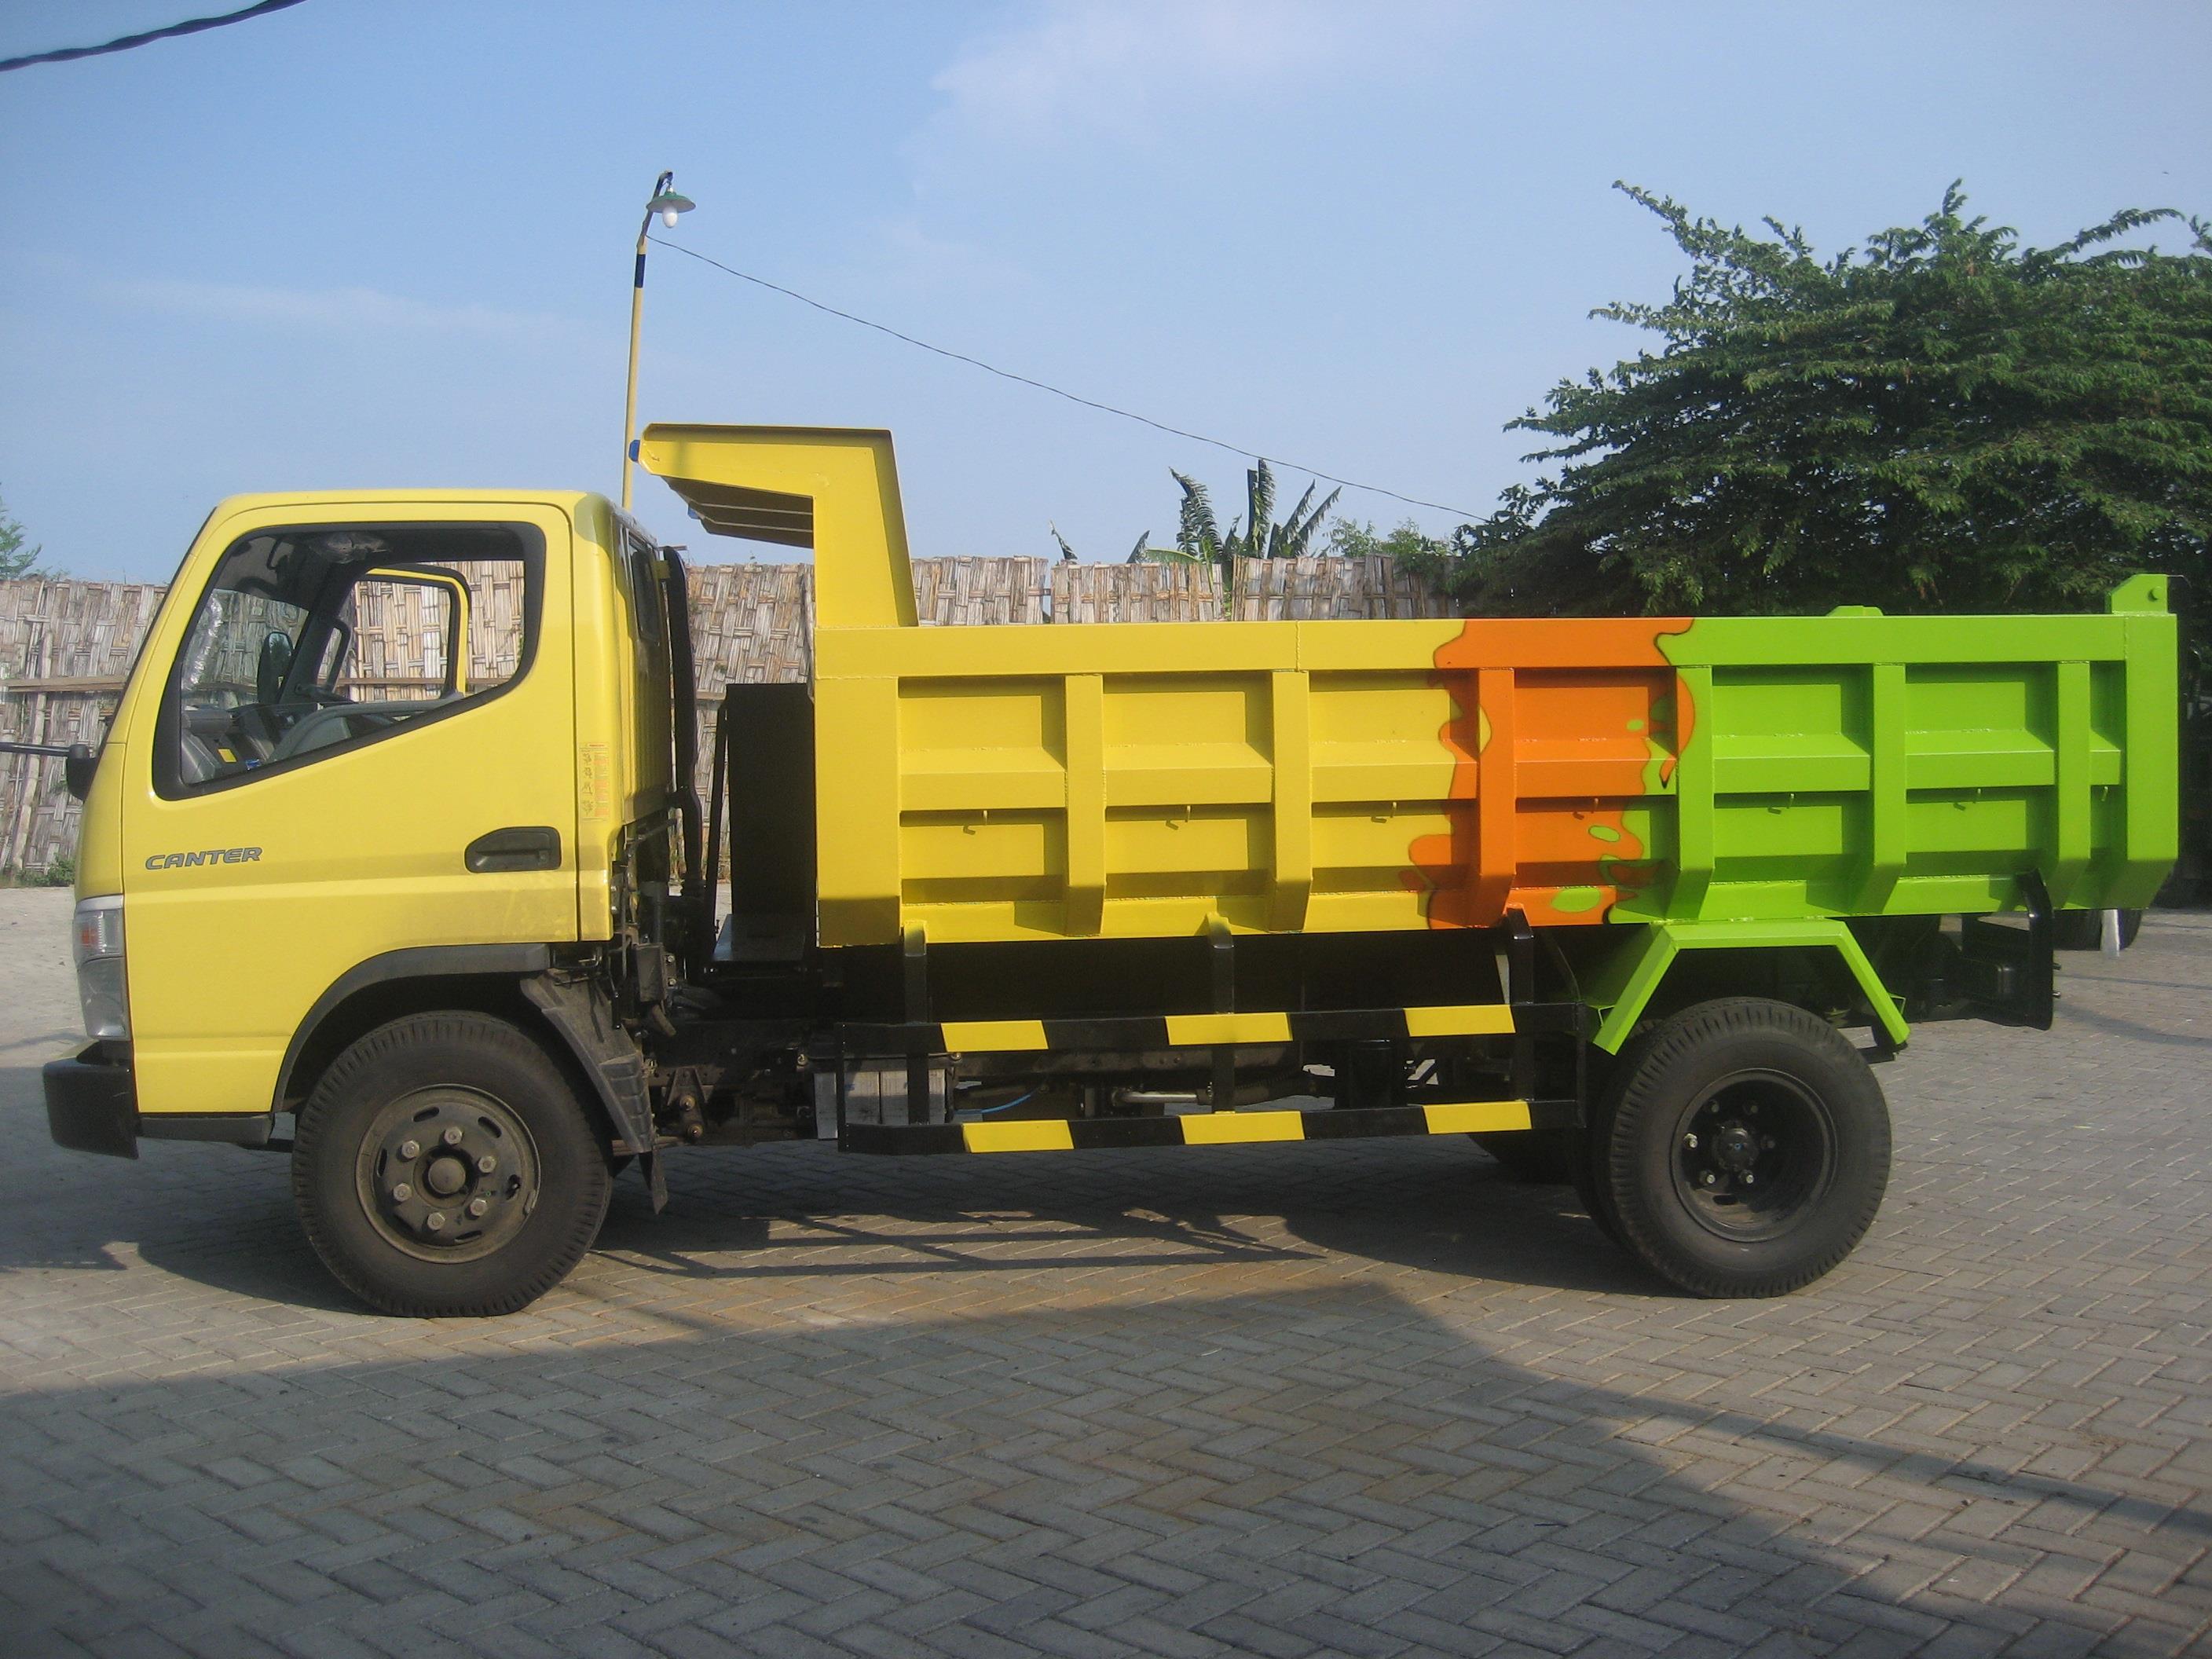 Modifikasi Dump Truck Indonesia Jual Modifikasi Karoseri Dump